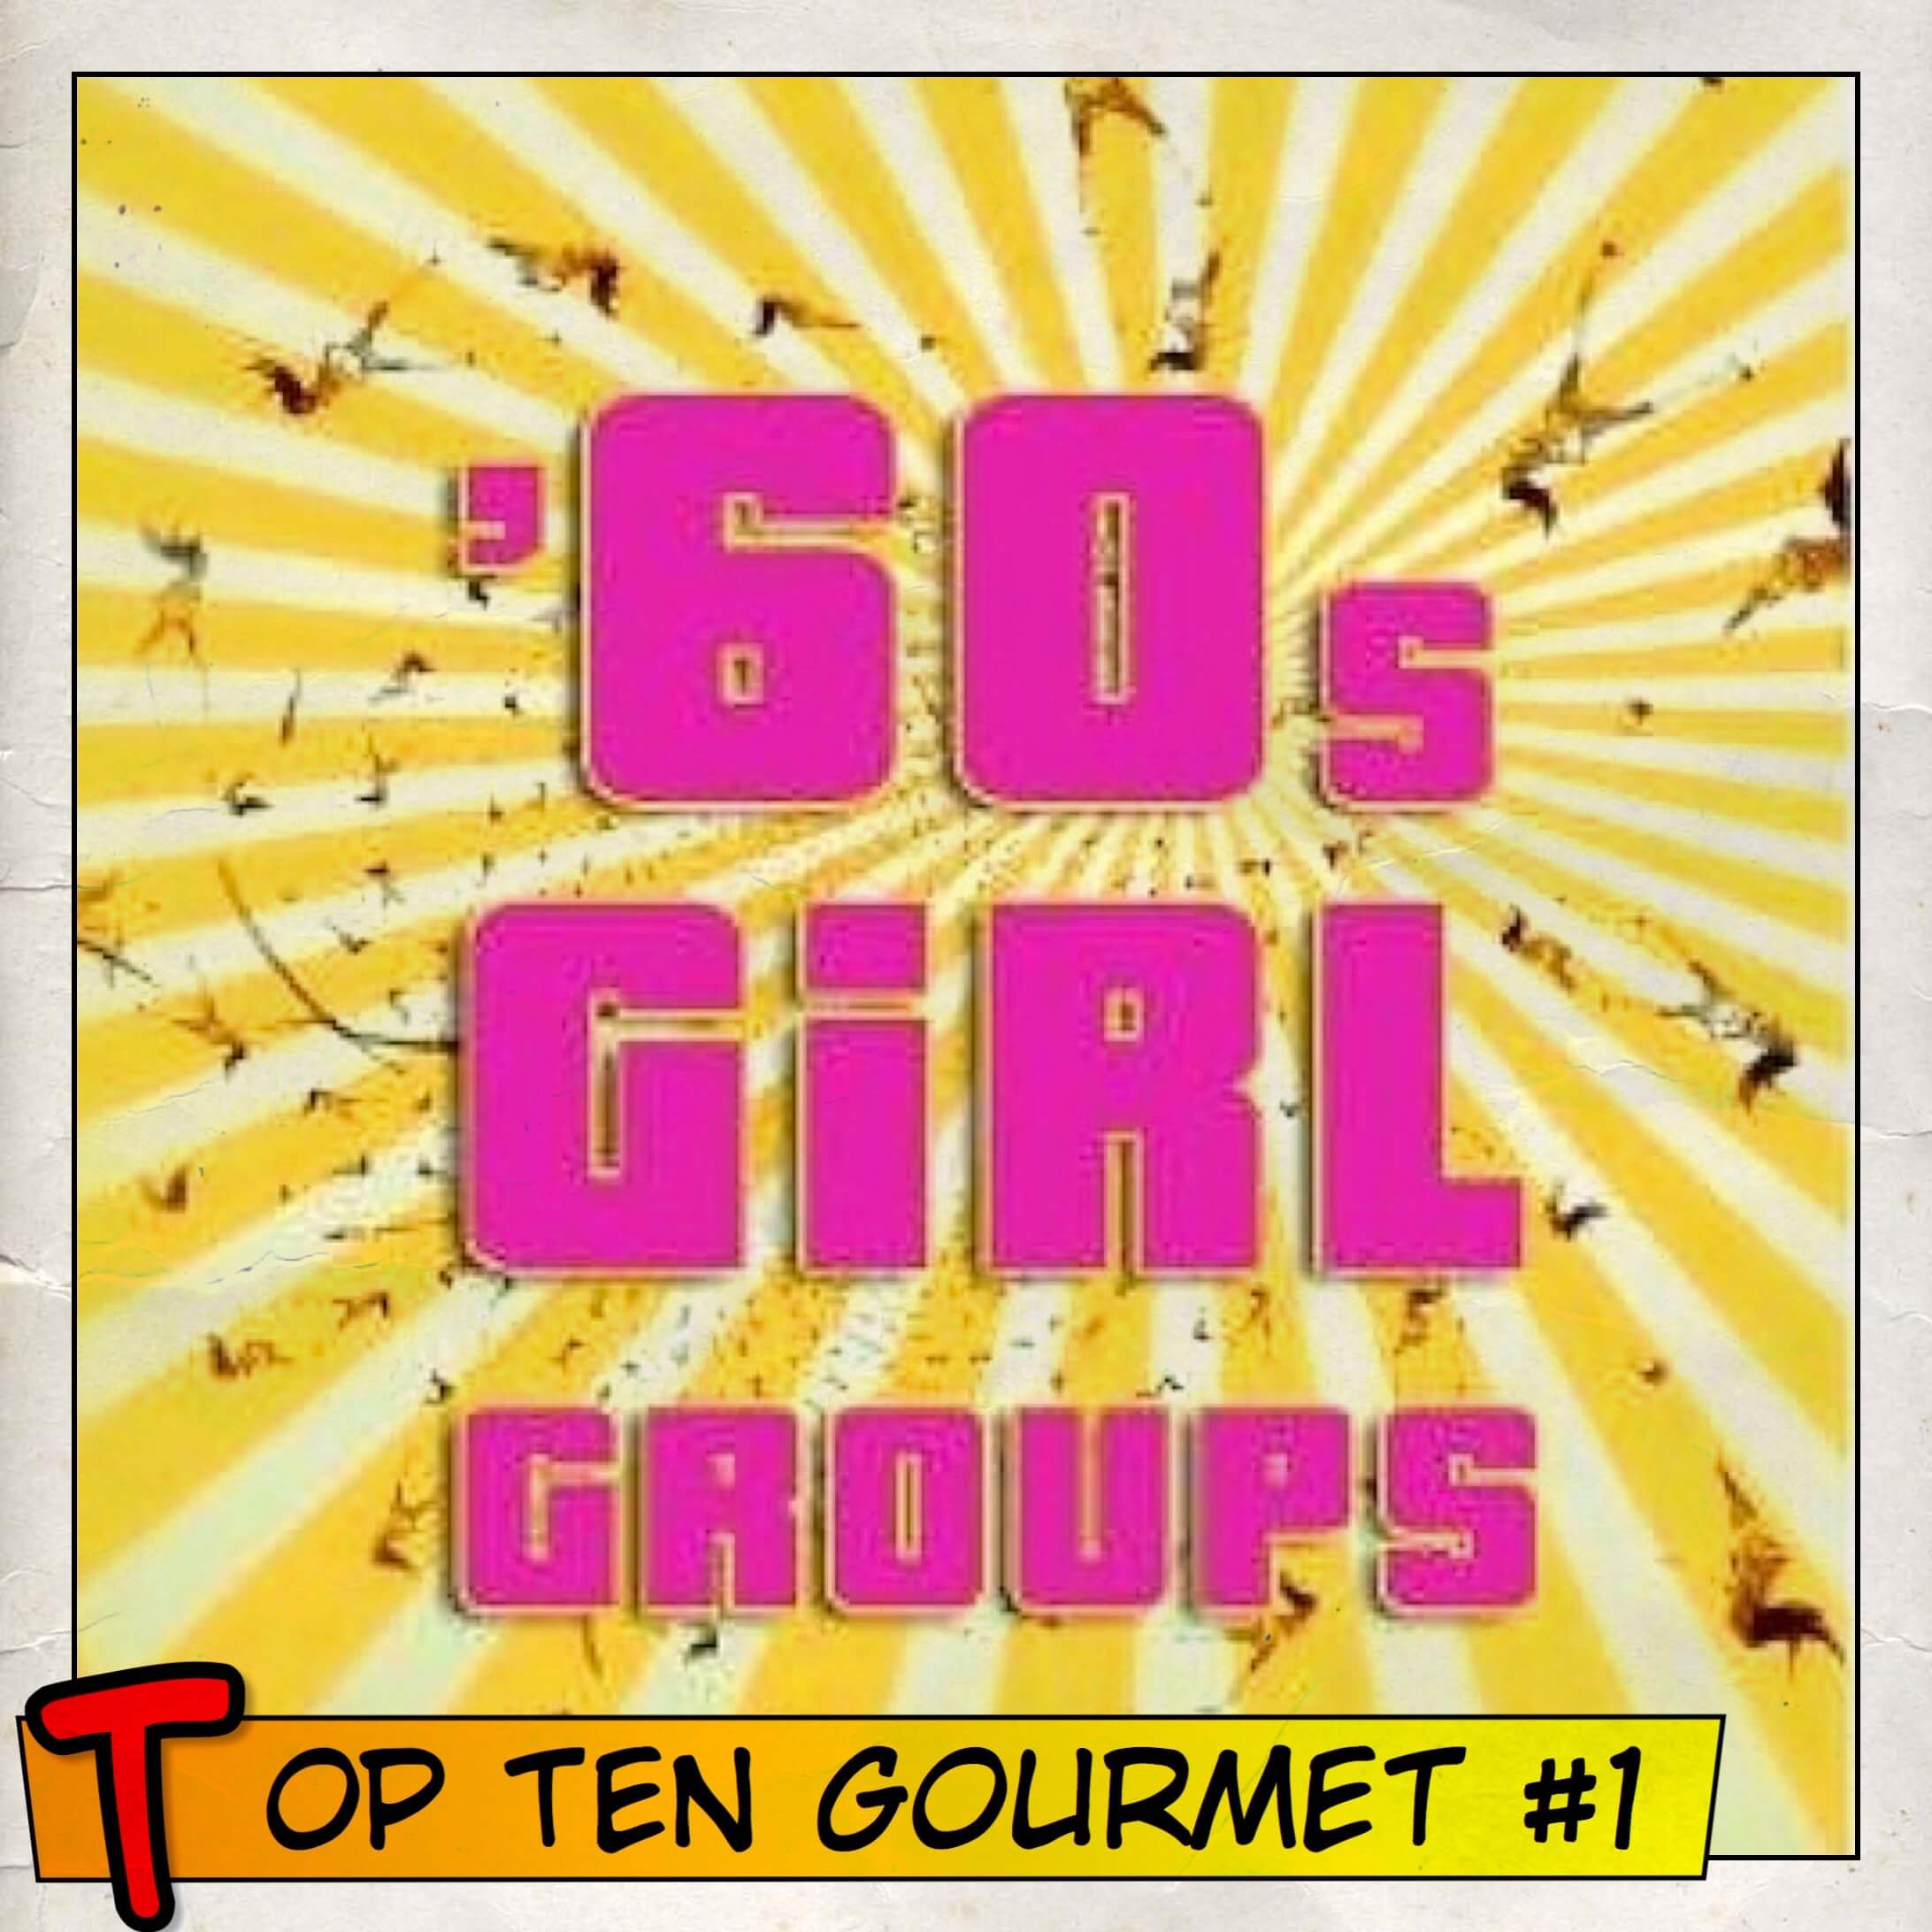 Top Ten Gopurmet 1 60s Girls Groups